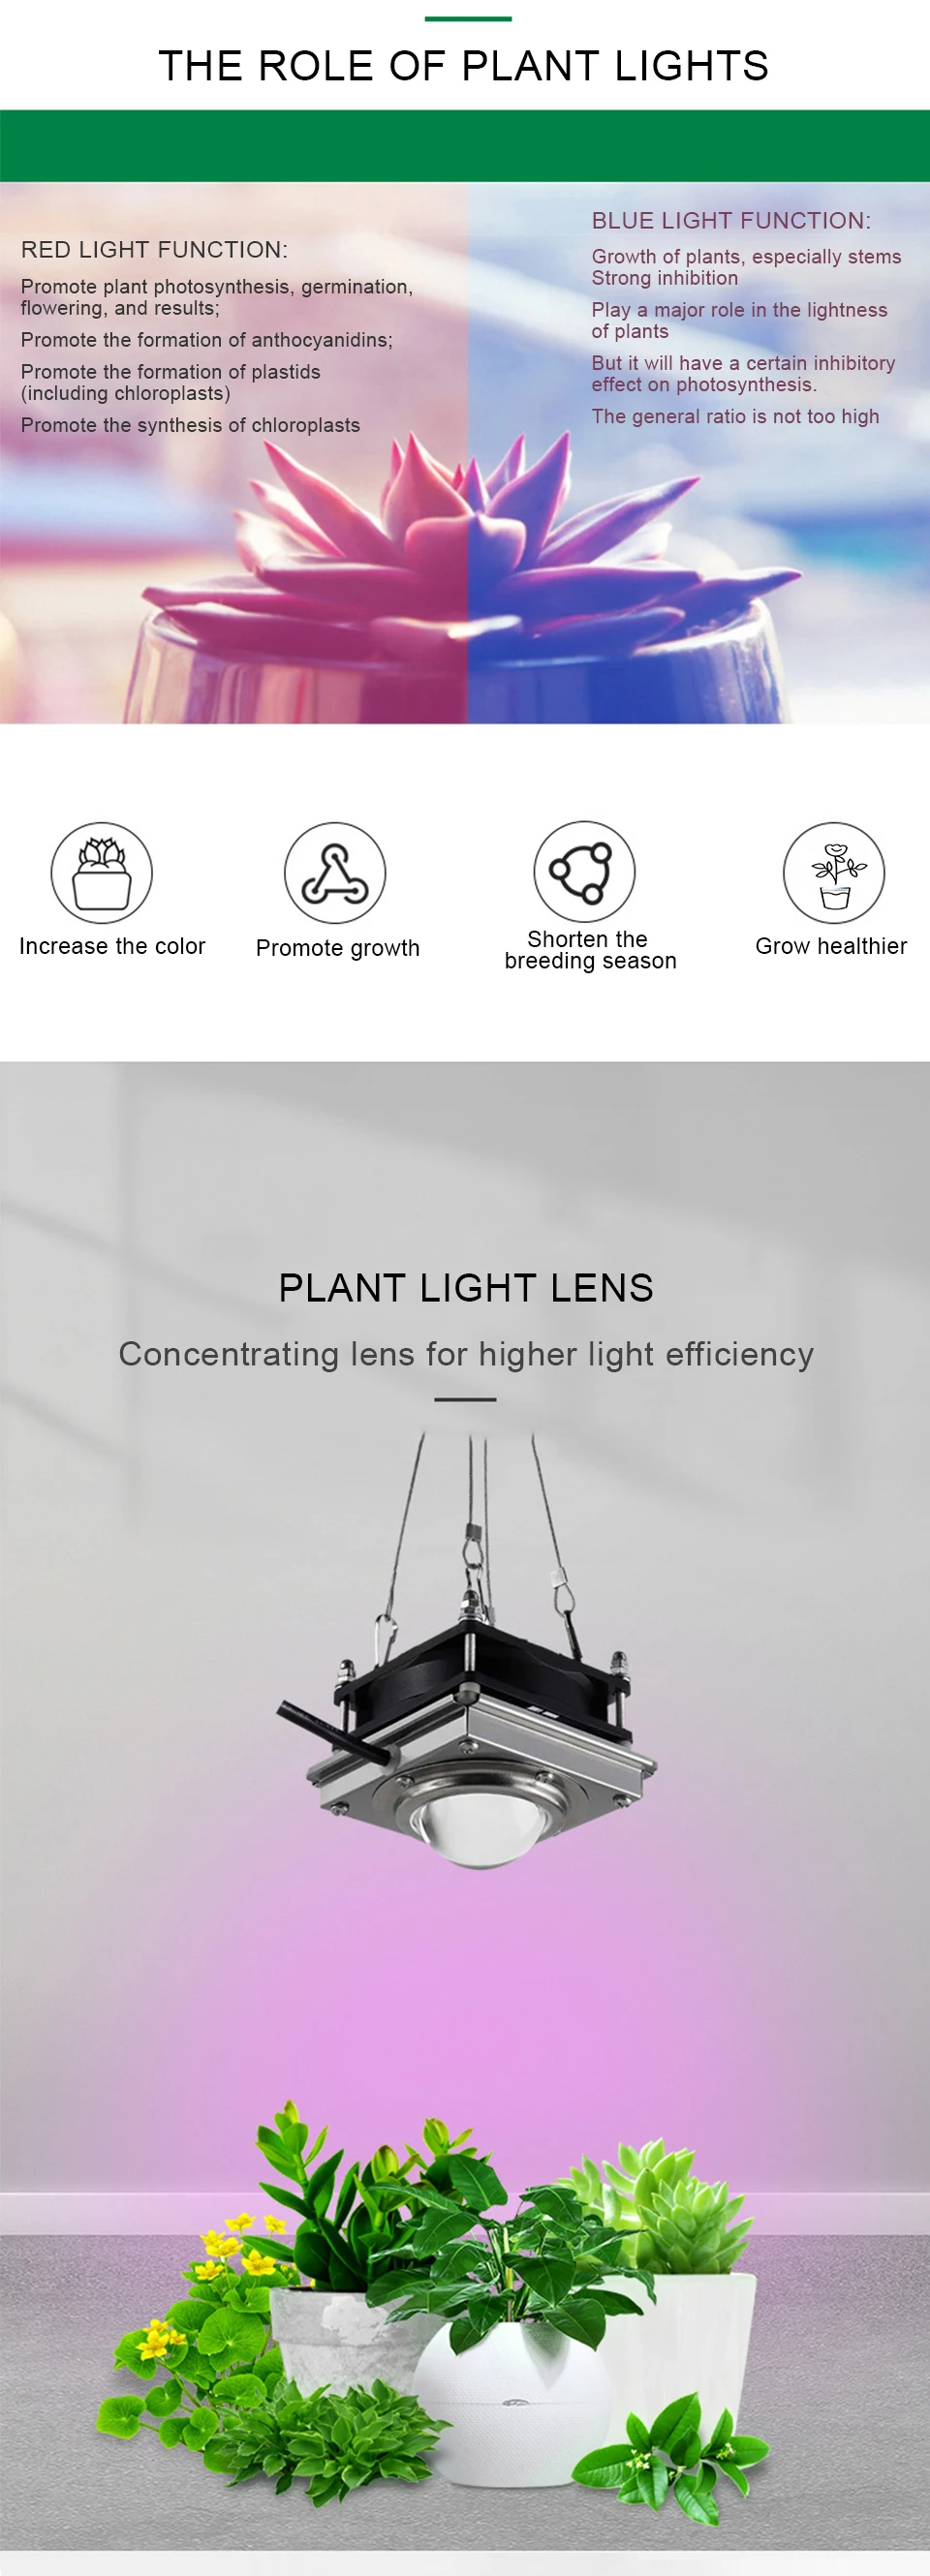 COB светодиодный светильник для выращивания 150 Вт, фито-лампа для растений, фитолампия, домашняя лампа, полный спектр, для выращивания палаток, садовый светильник, для растений, цветов